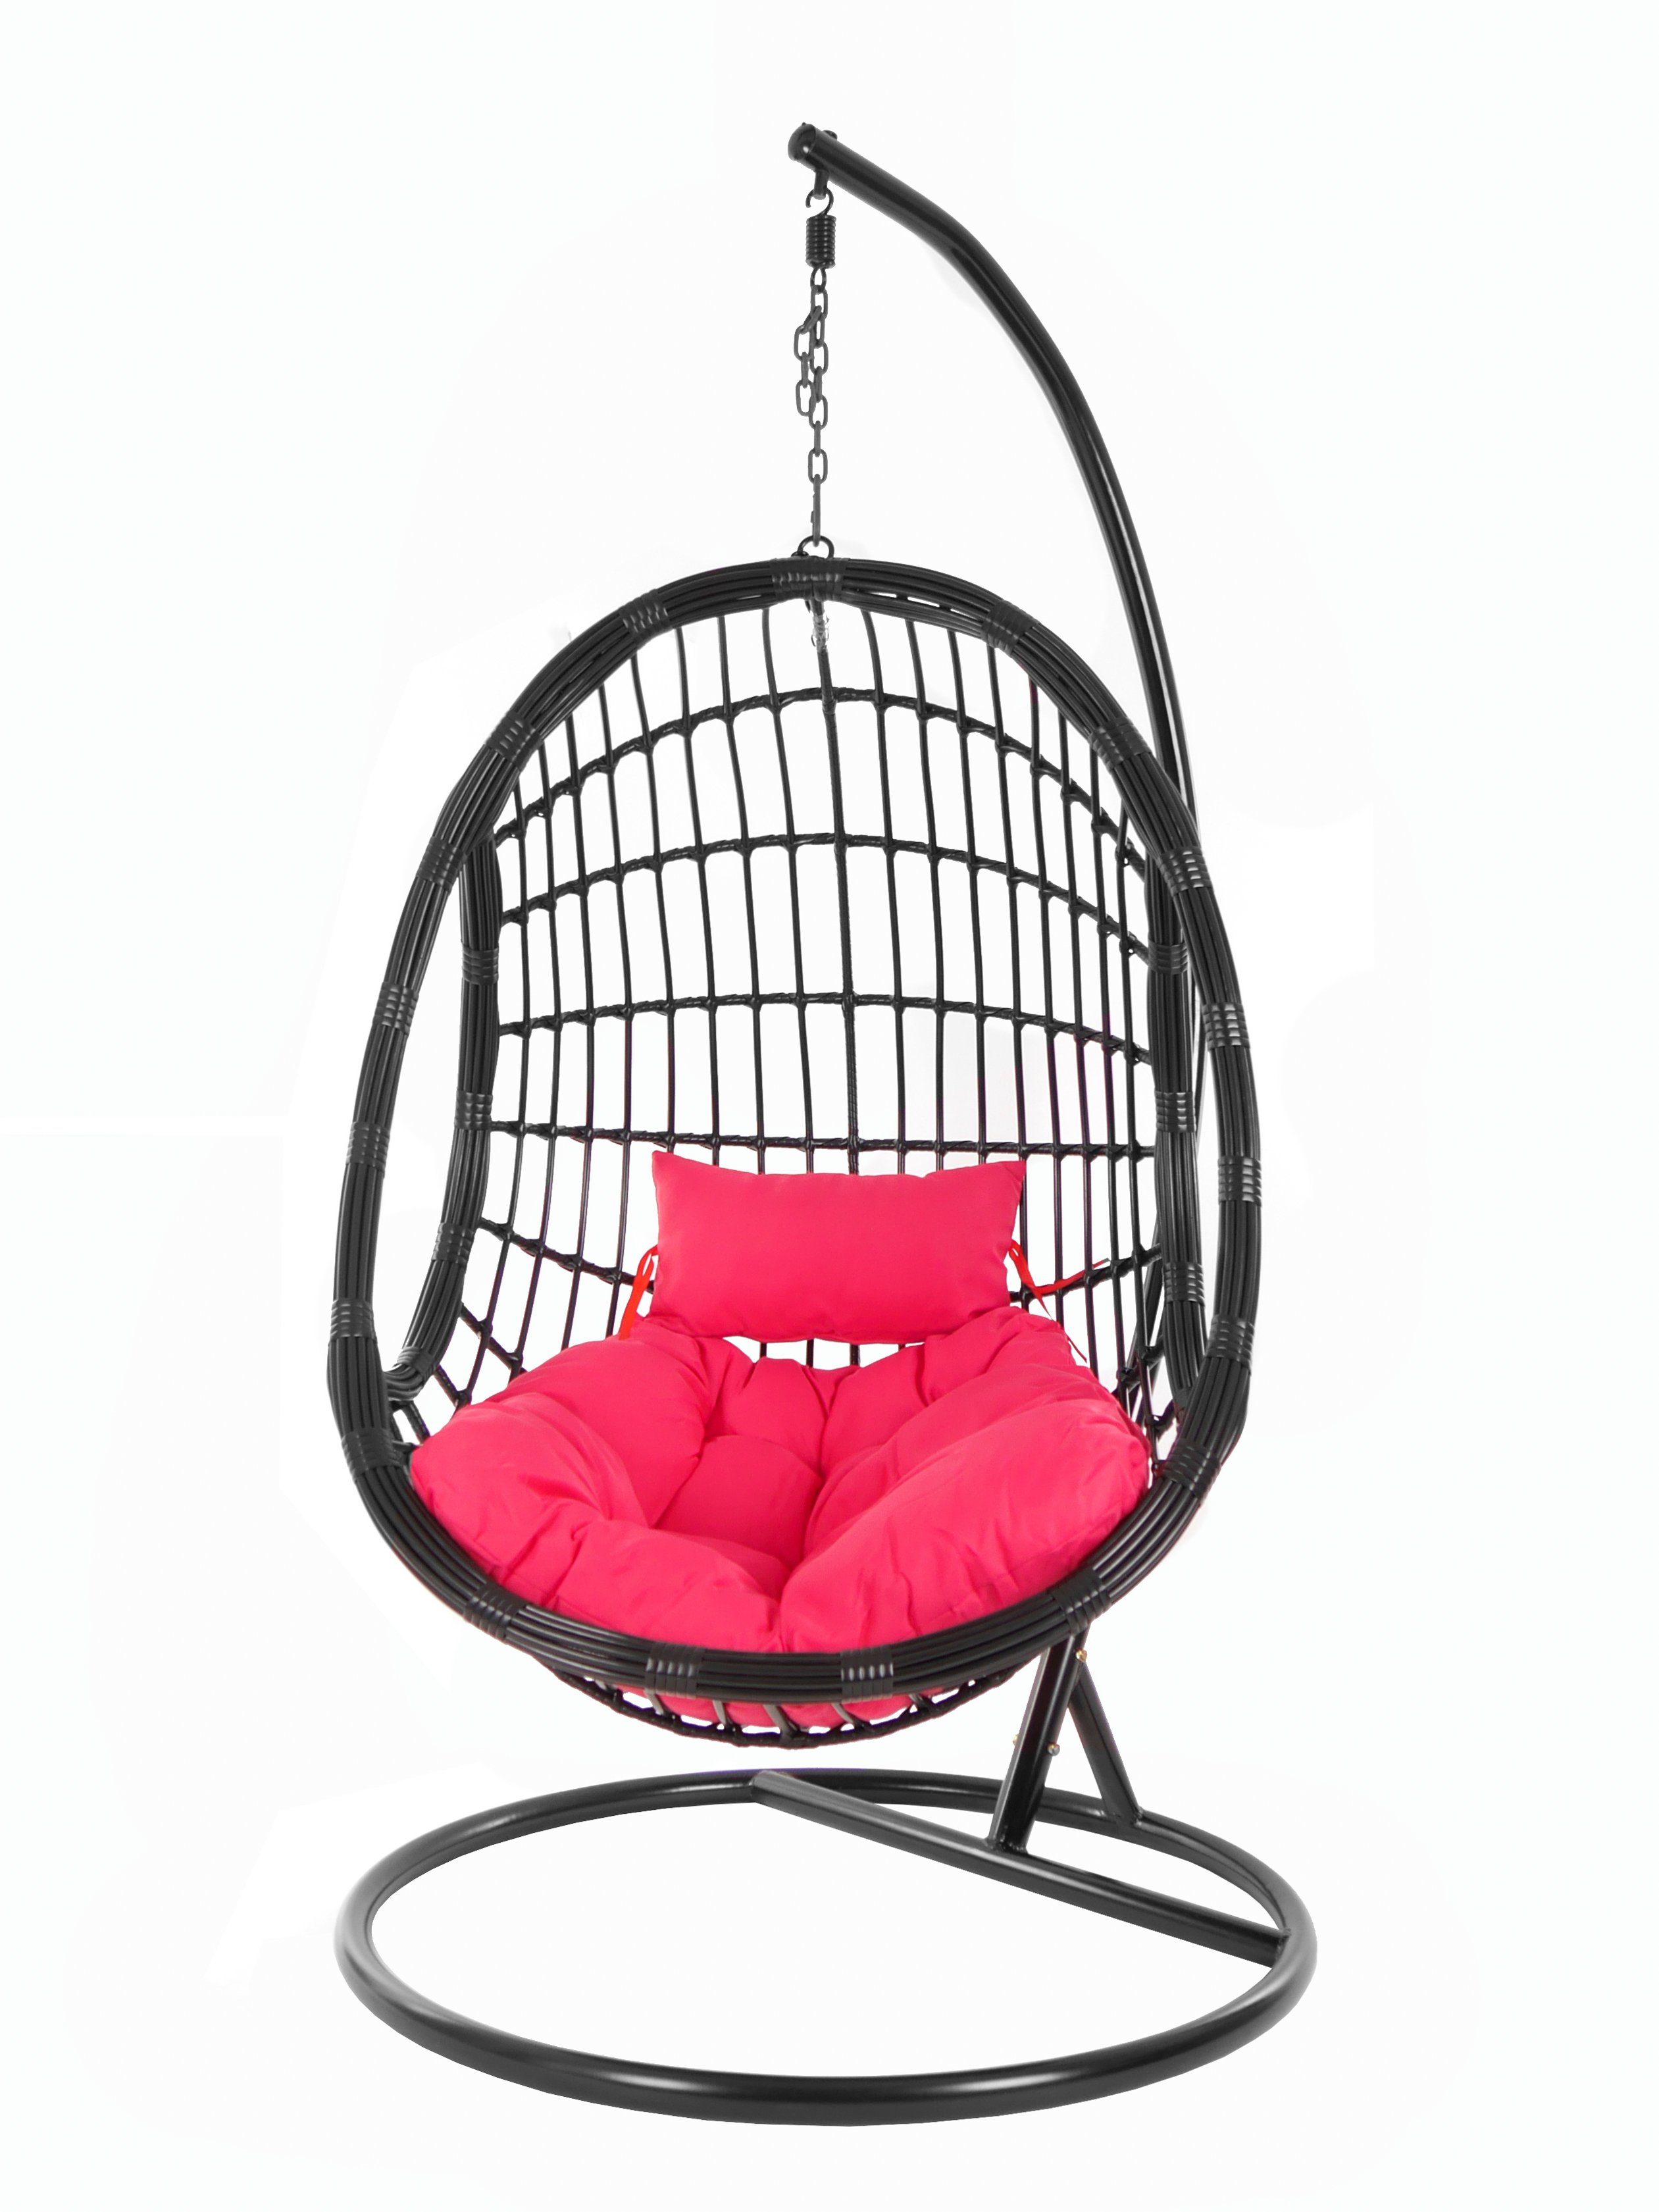 KIDEO Hängesessel PALMANOVA black, Swing mit schwarz, edles Design hot pink Gestell pink) Schwebesessel, Kissen, (3333 und Hängesessel Loungemöbel, Chair